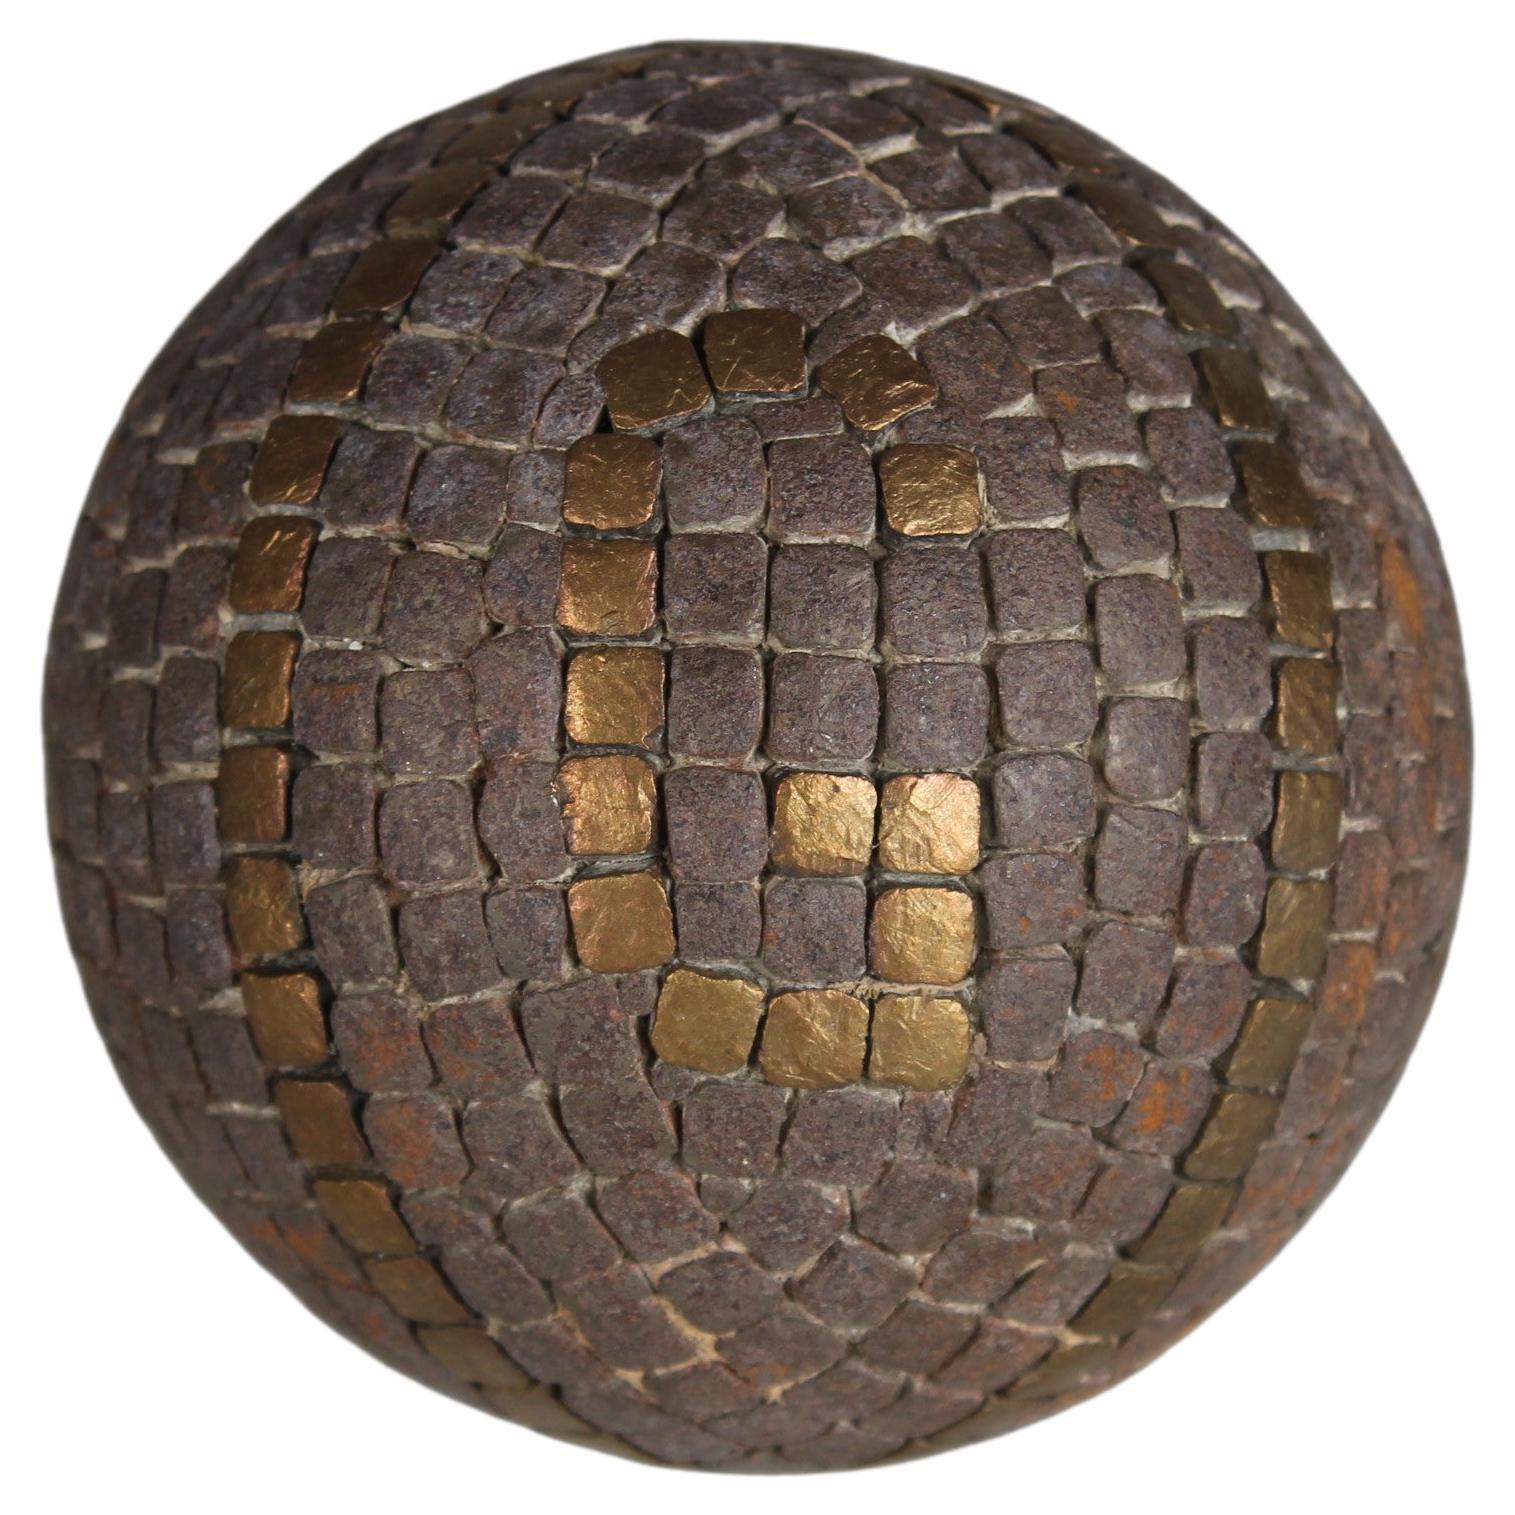 Antique Boule Ball "G", "J", Pétanque, 1880s, France, Craftsmanship For Sale